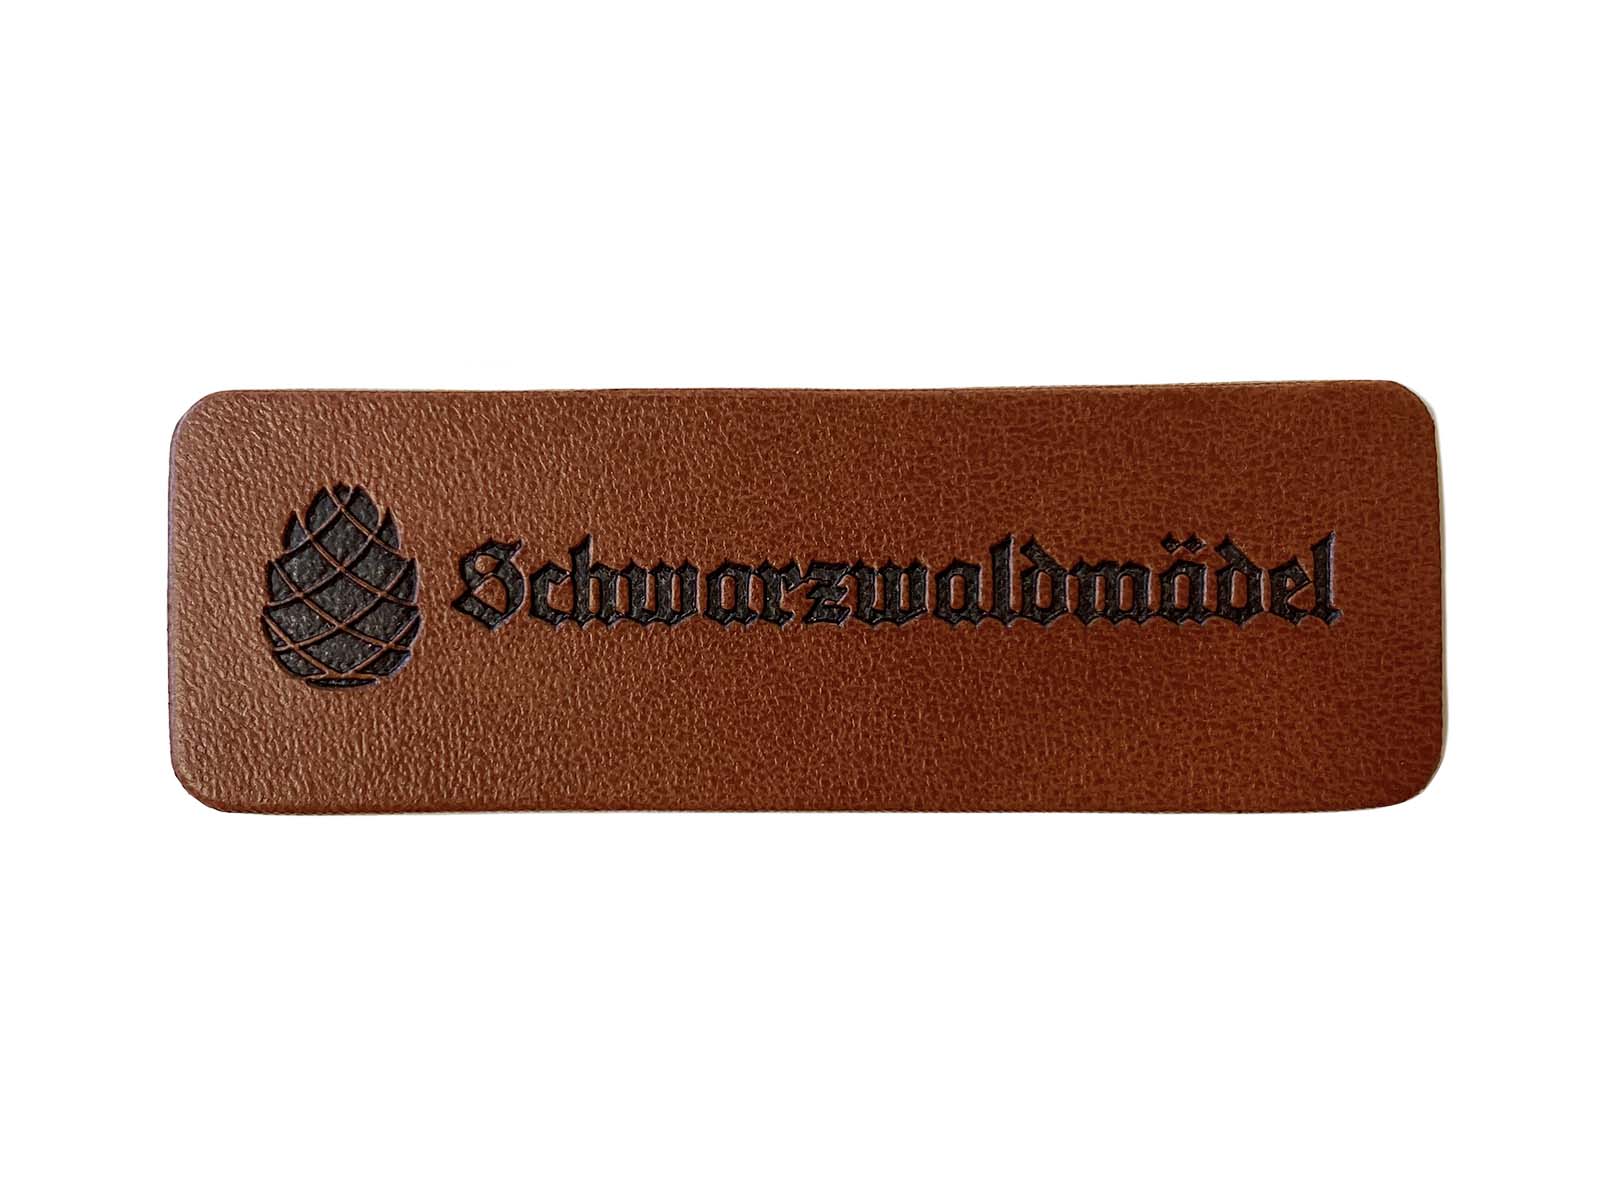 Label aus Kunstleder - "Schwarzwaldmädel" in dunkelbraun